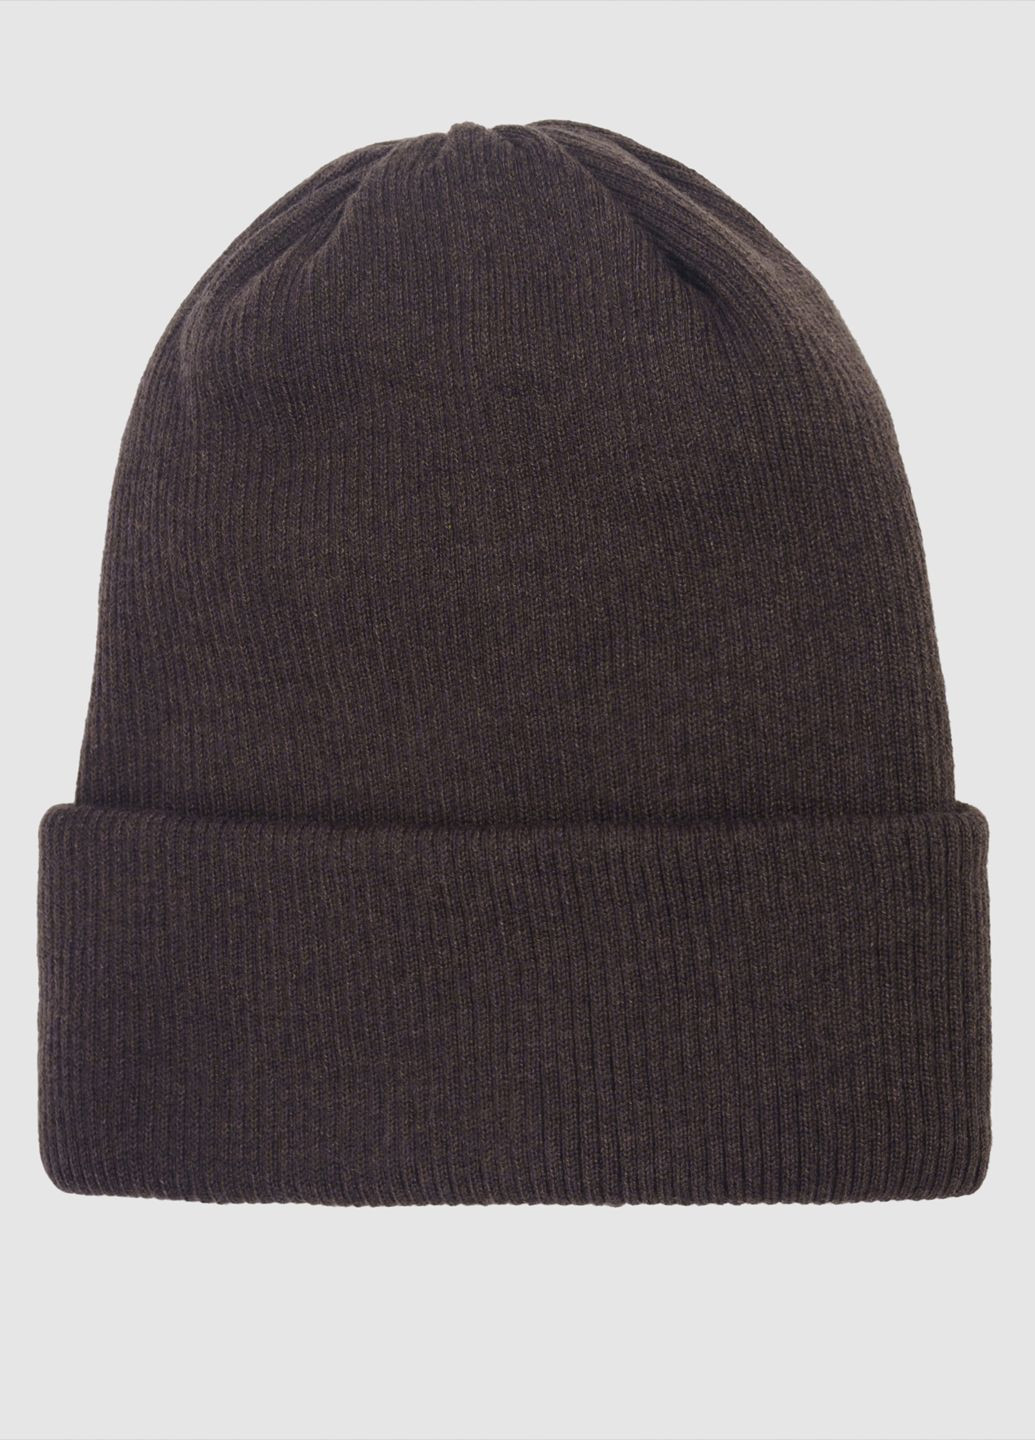 Шапка мужская коричневая Arber шапка 12 rib2*2 (285787730)